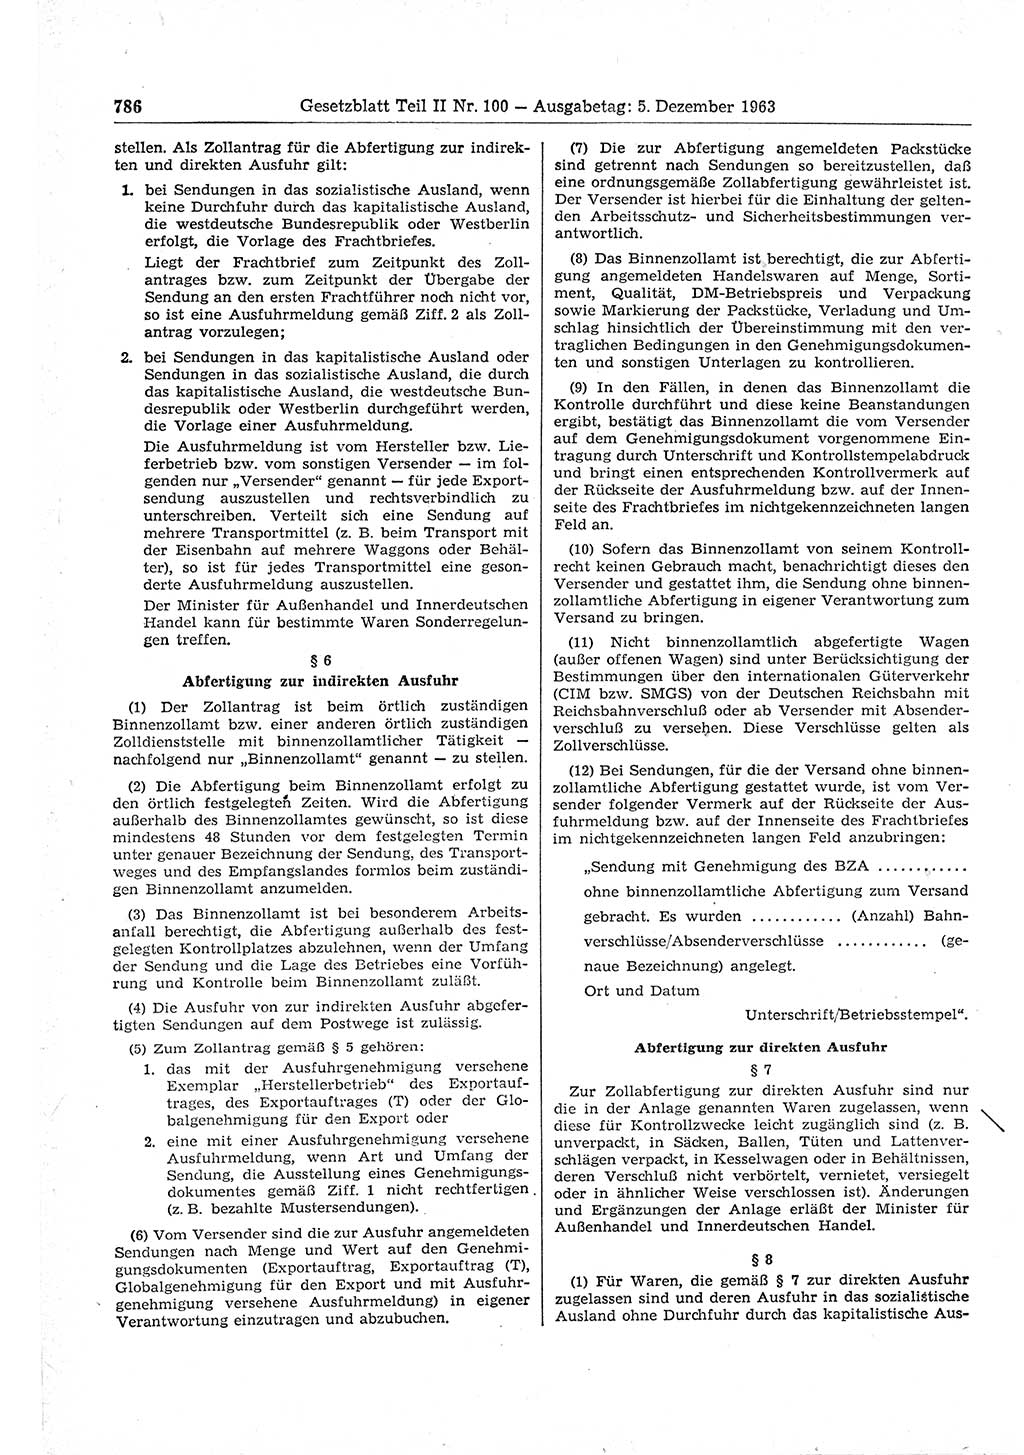 Gesetzblatt (GBl.) der Deutschen Demokratischen Republik (DDR) Teil ⅠⅠ 1963, Seite 786 (GBl. DDR ⅠⅠ 1963, S. 786)